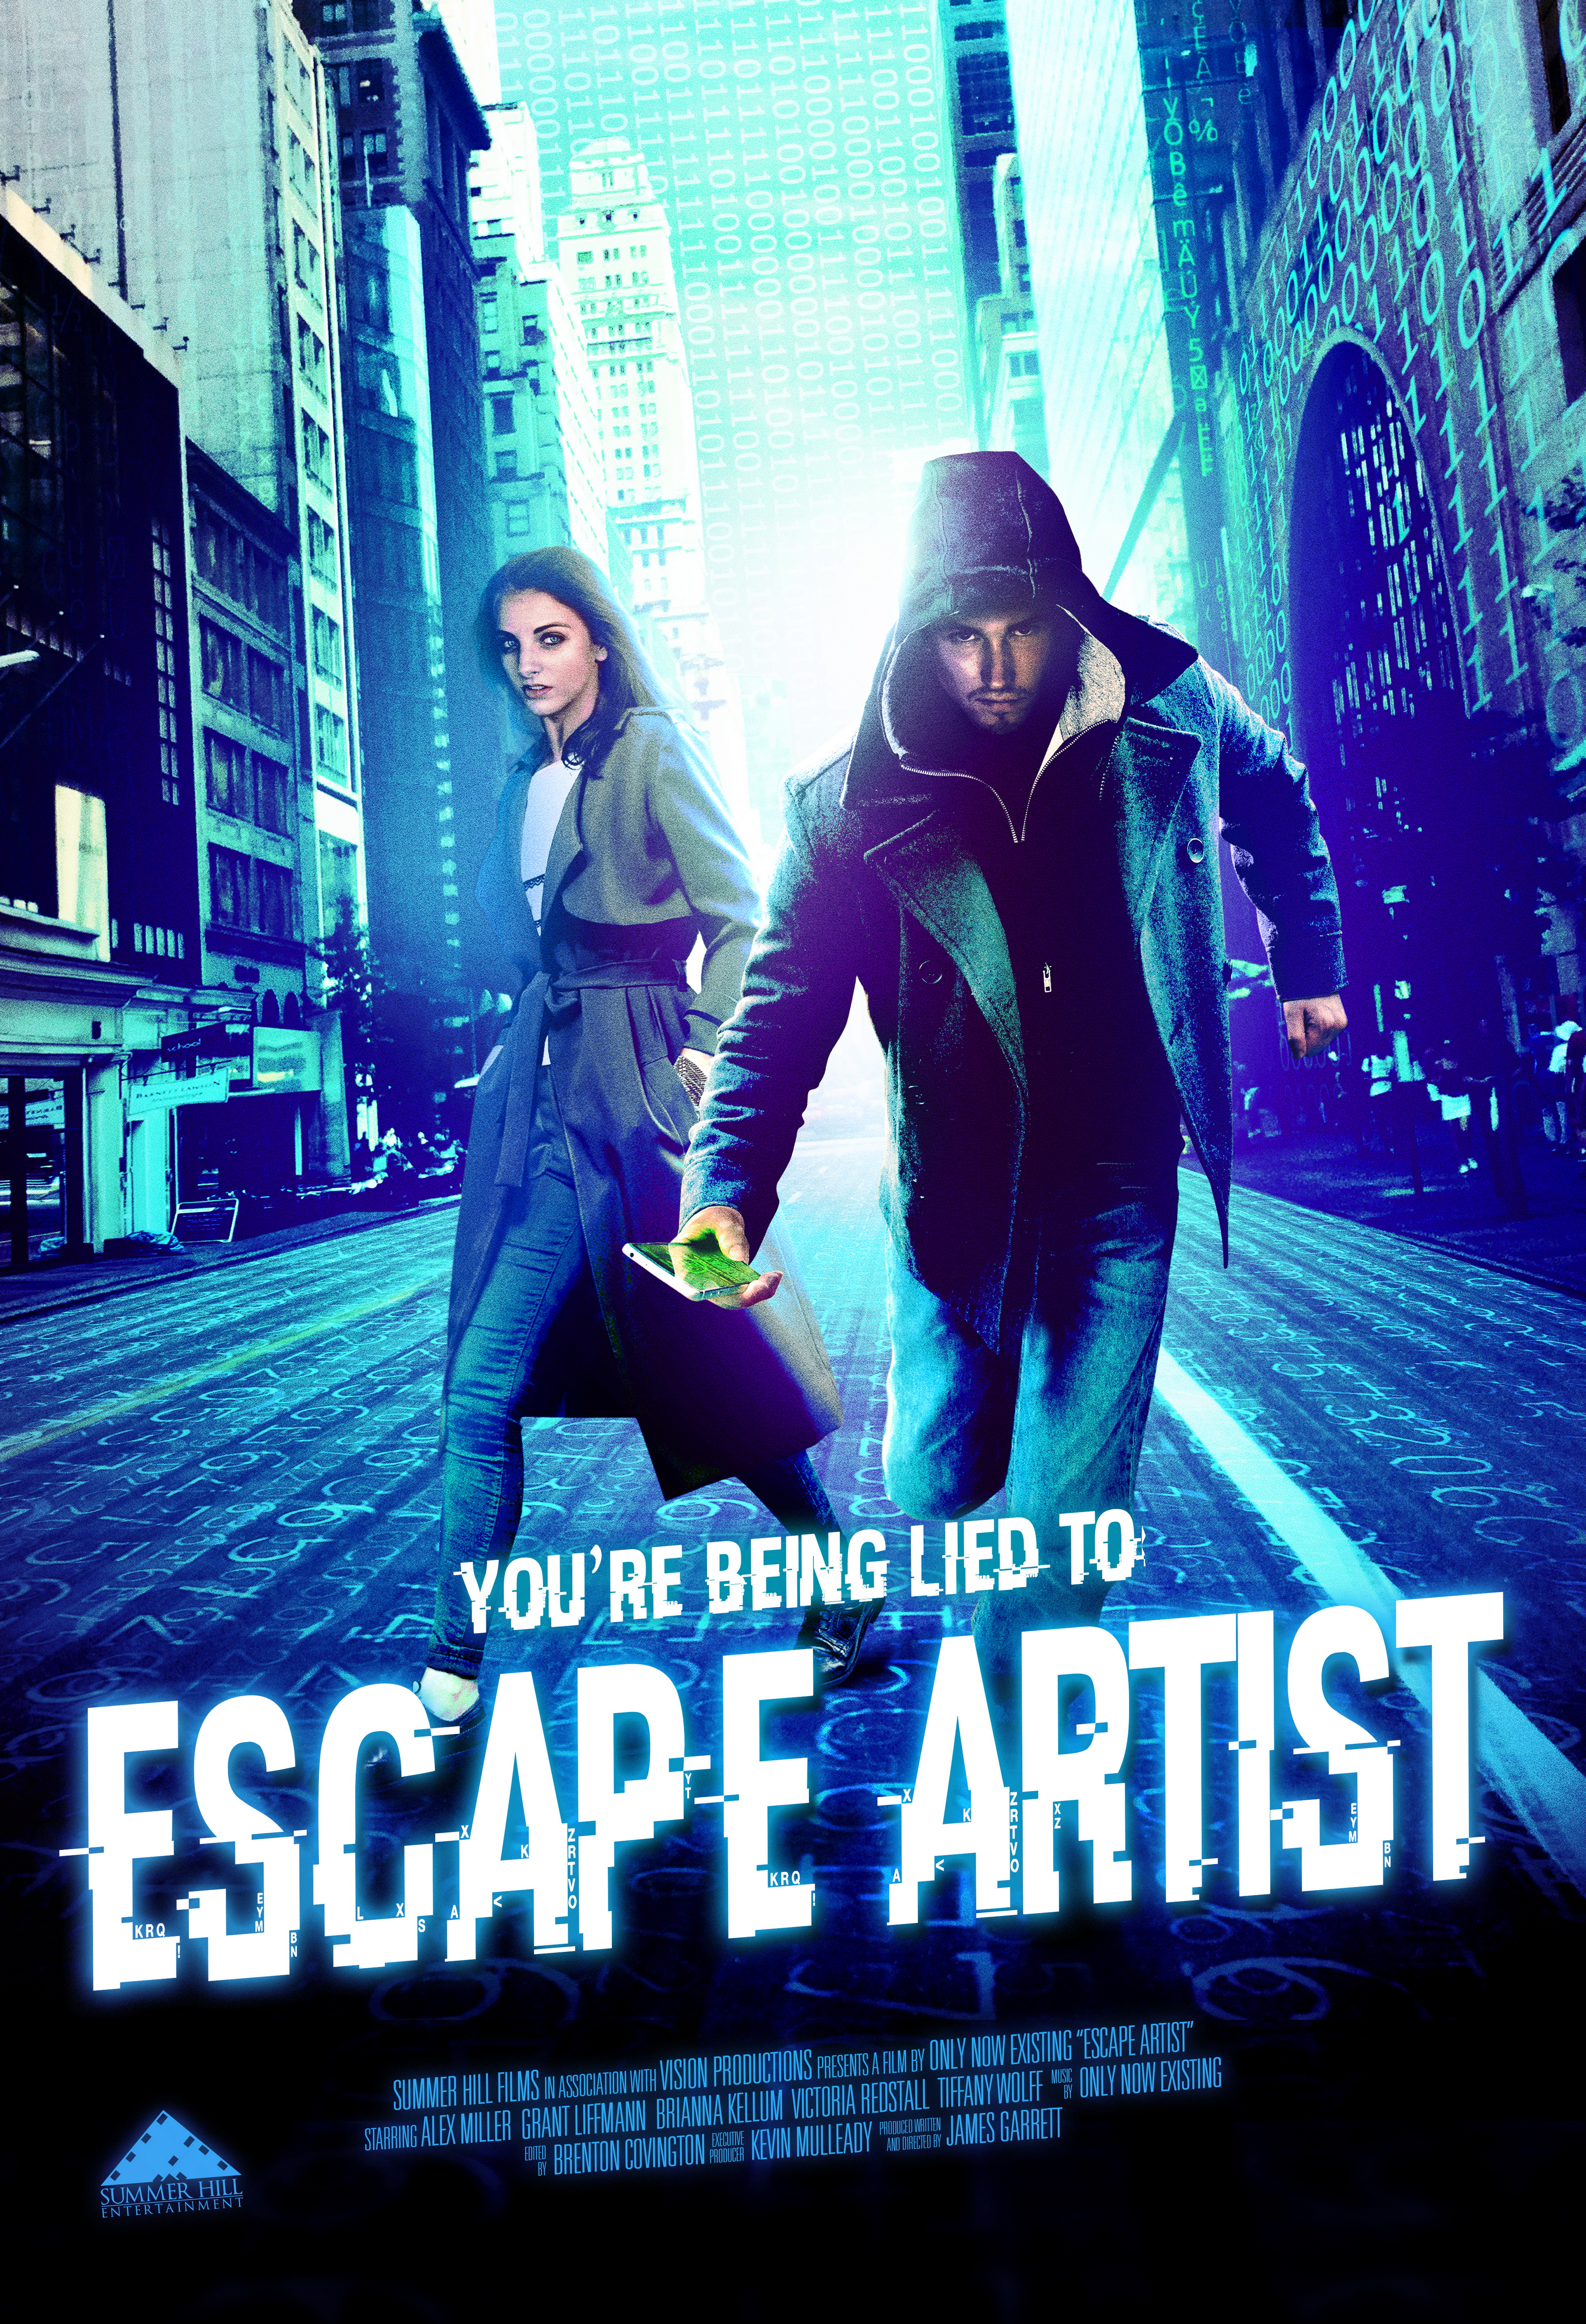 Nonton film Escape Artist layarkaca21 indoxx1 ganool online streaming terbaru